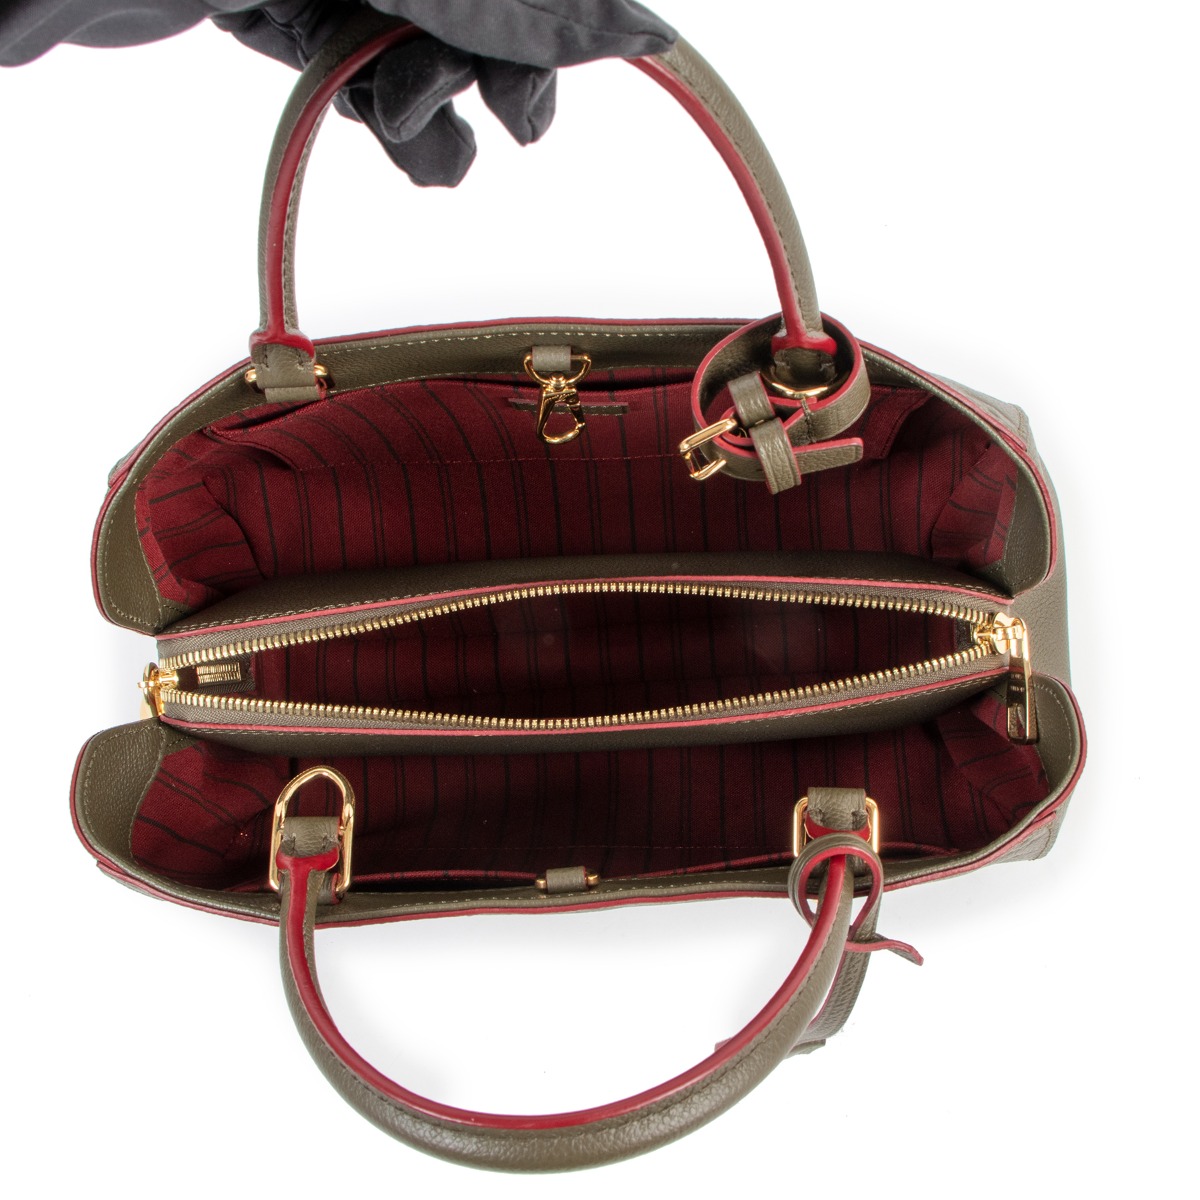 Montaigne MM Empreinte – Keeks Designer Handbags